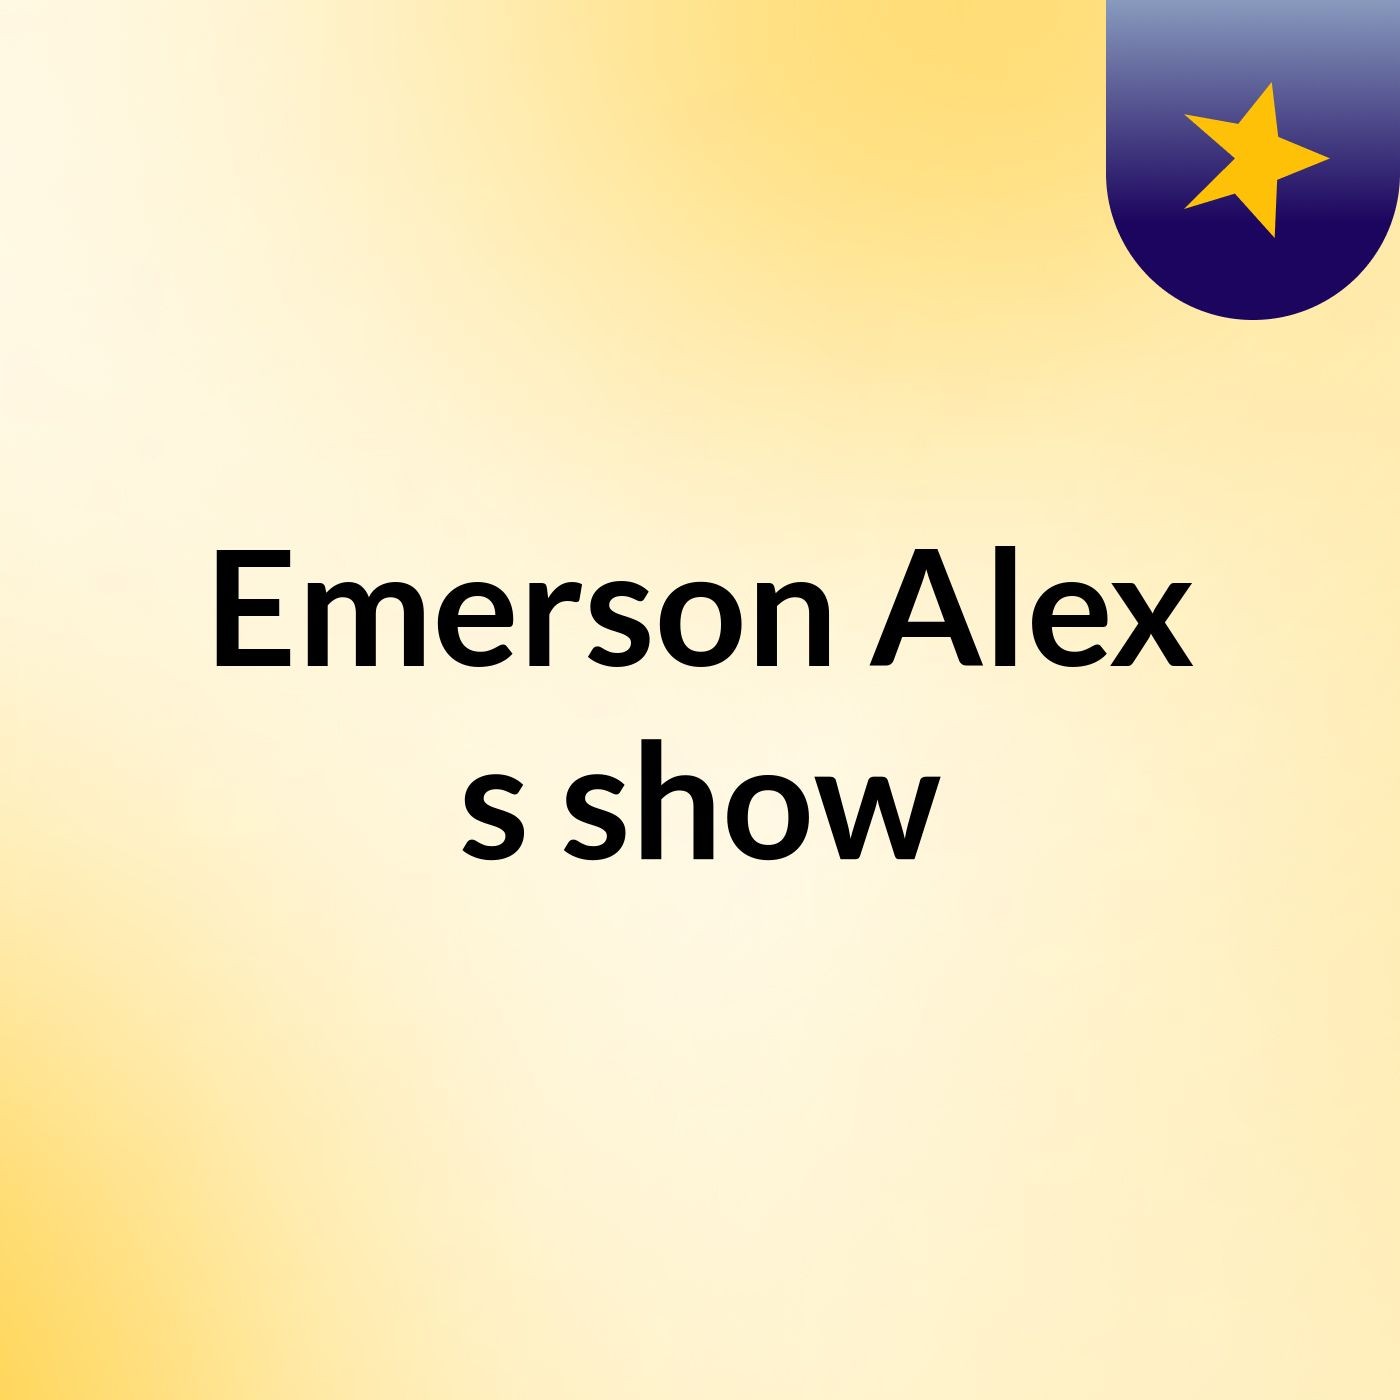 Emerson Alex's show